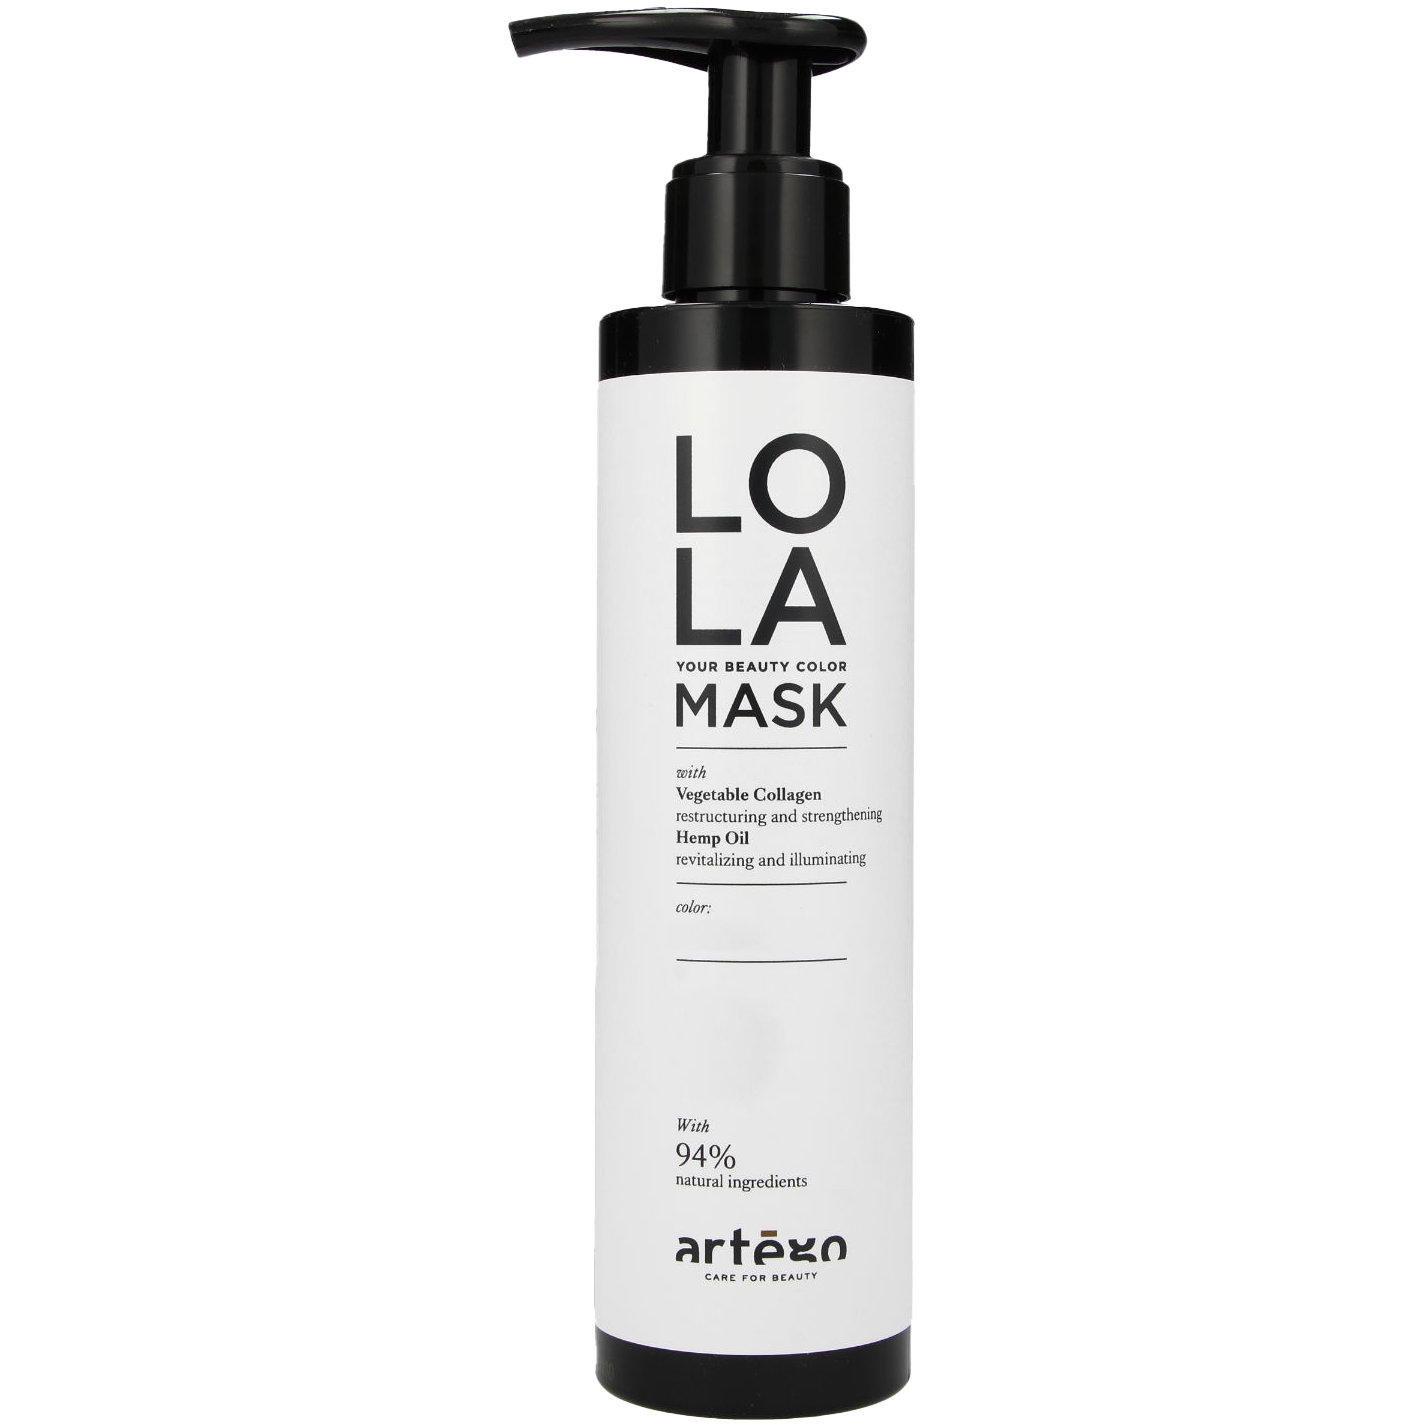 Тонирующая маска Artego Lola Color для волос, 200 мл маска для волос тонирующая artego color shine mask honey мед 200 мл